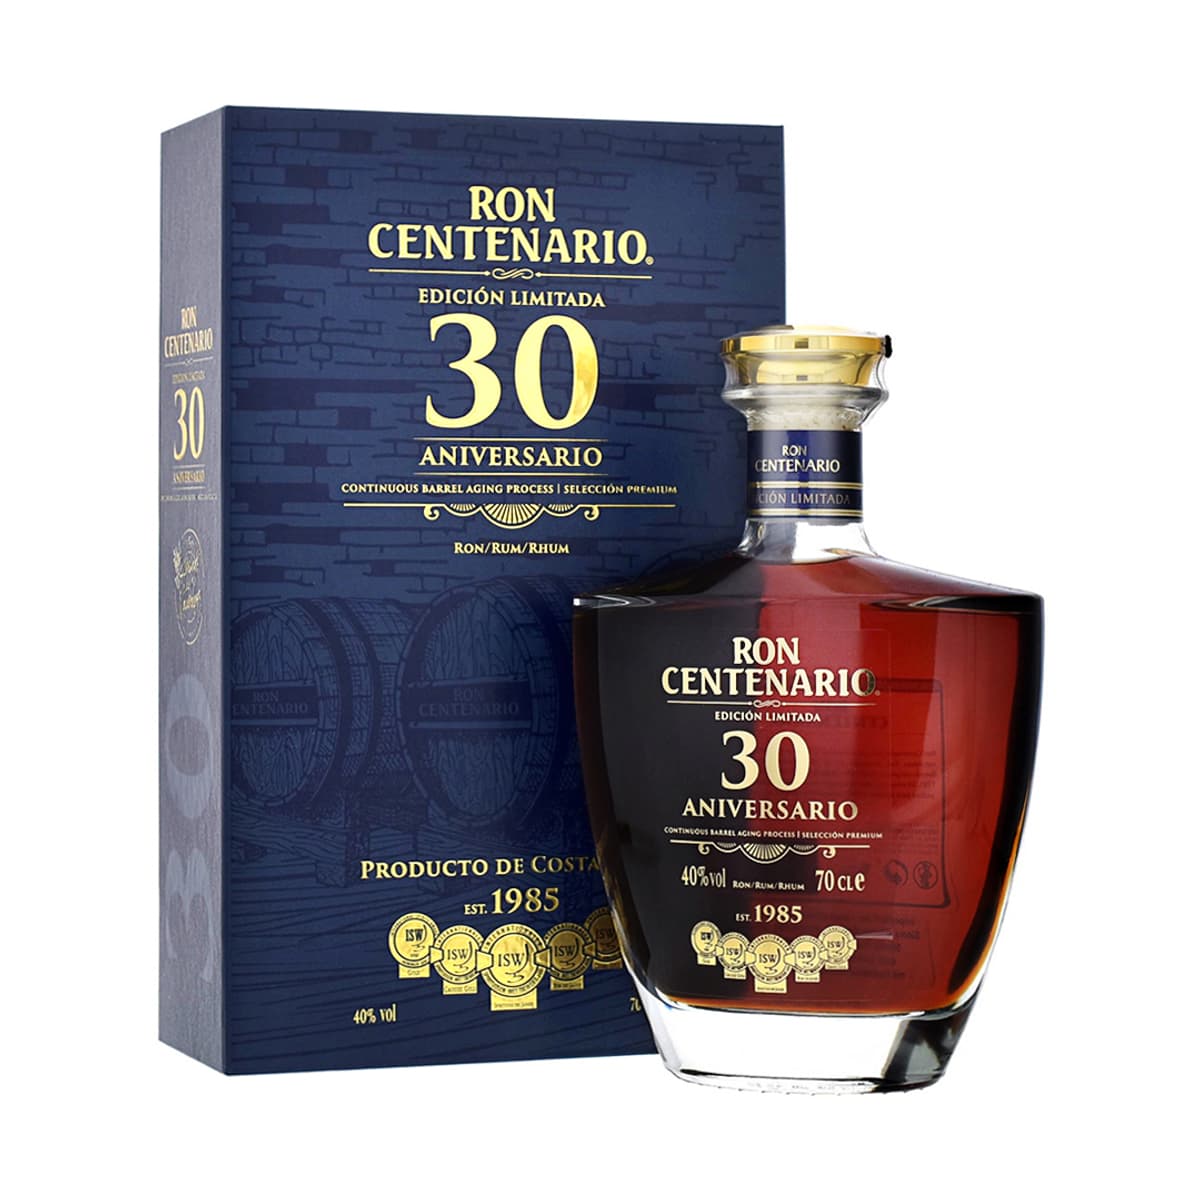 Centenario Edicion Limitada 30 Sistema 70cl Solera Rum Años